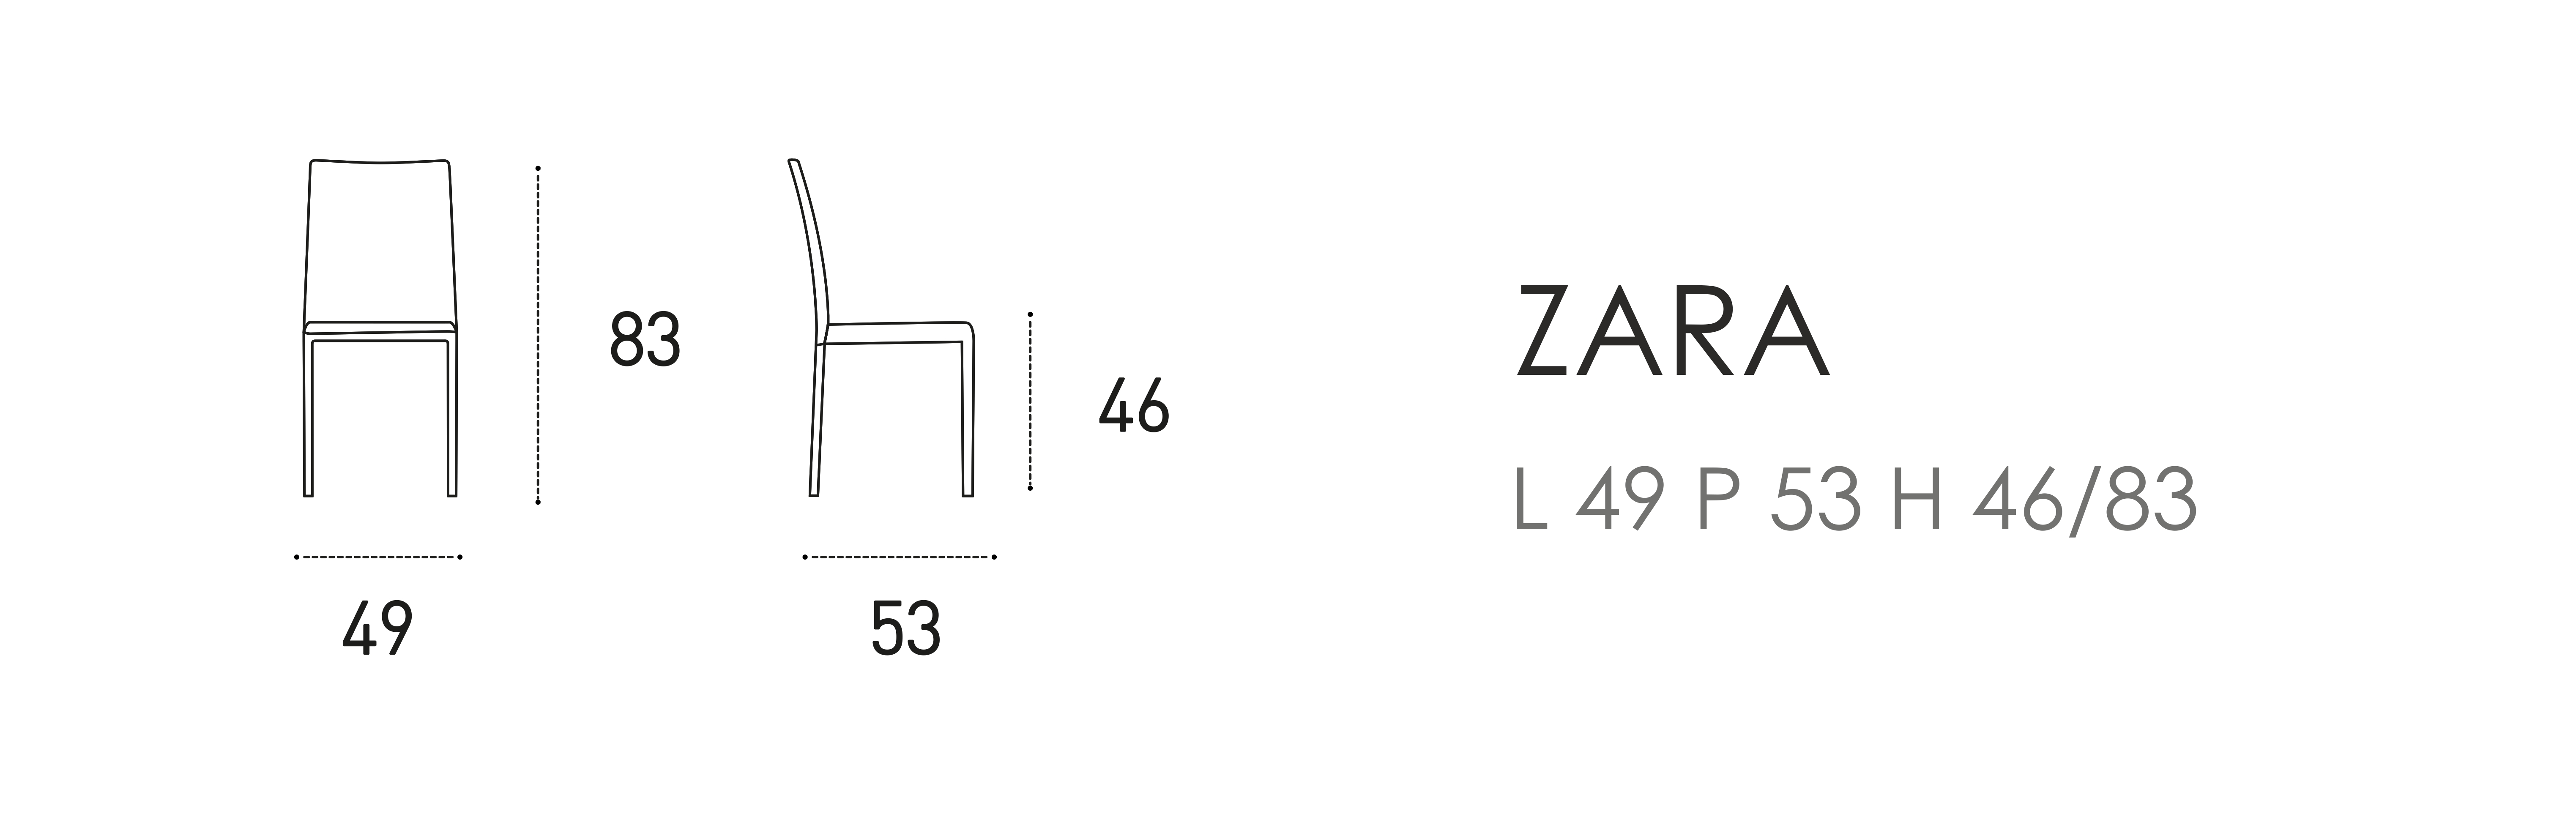 Zara L 49 P 53 H 46/83